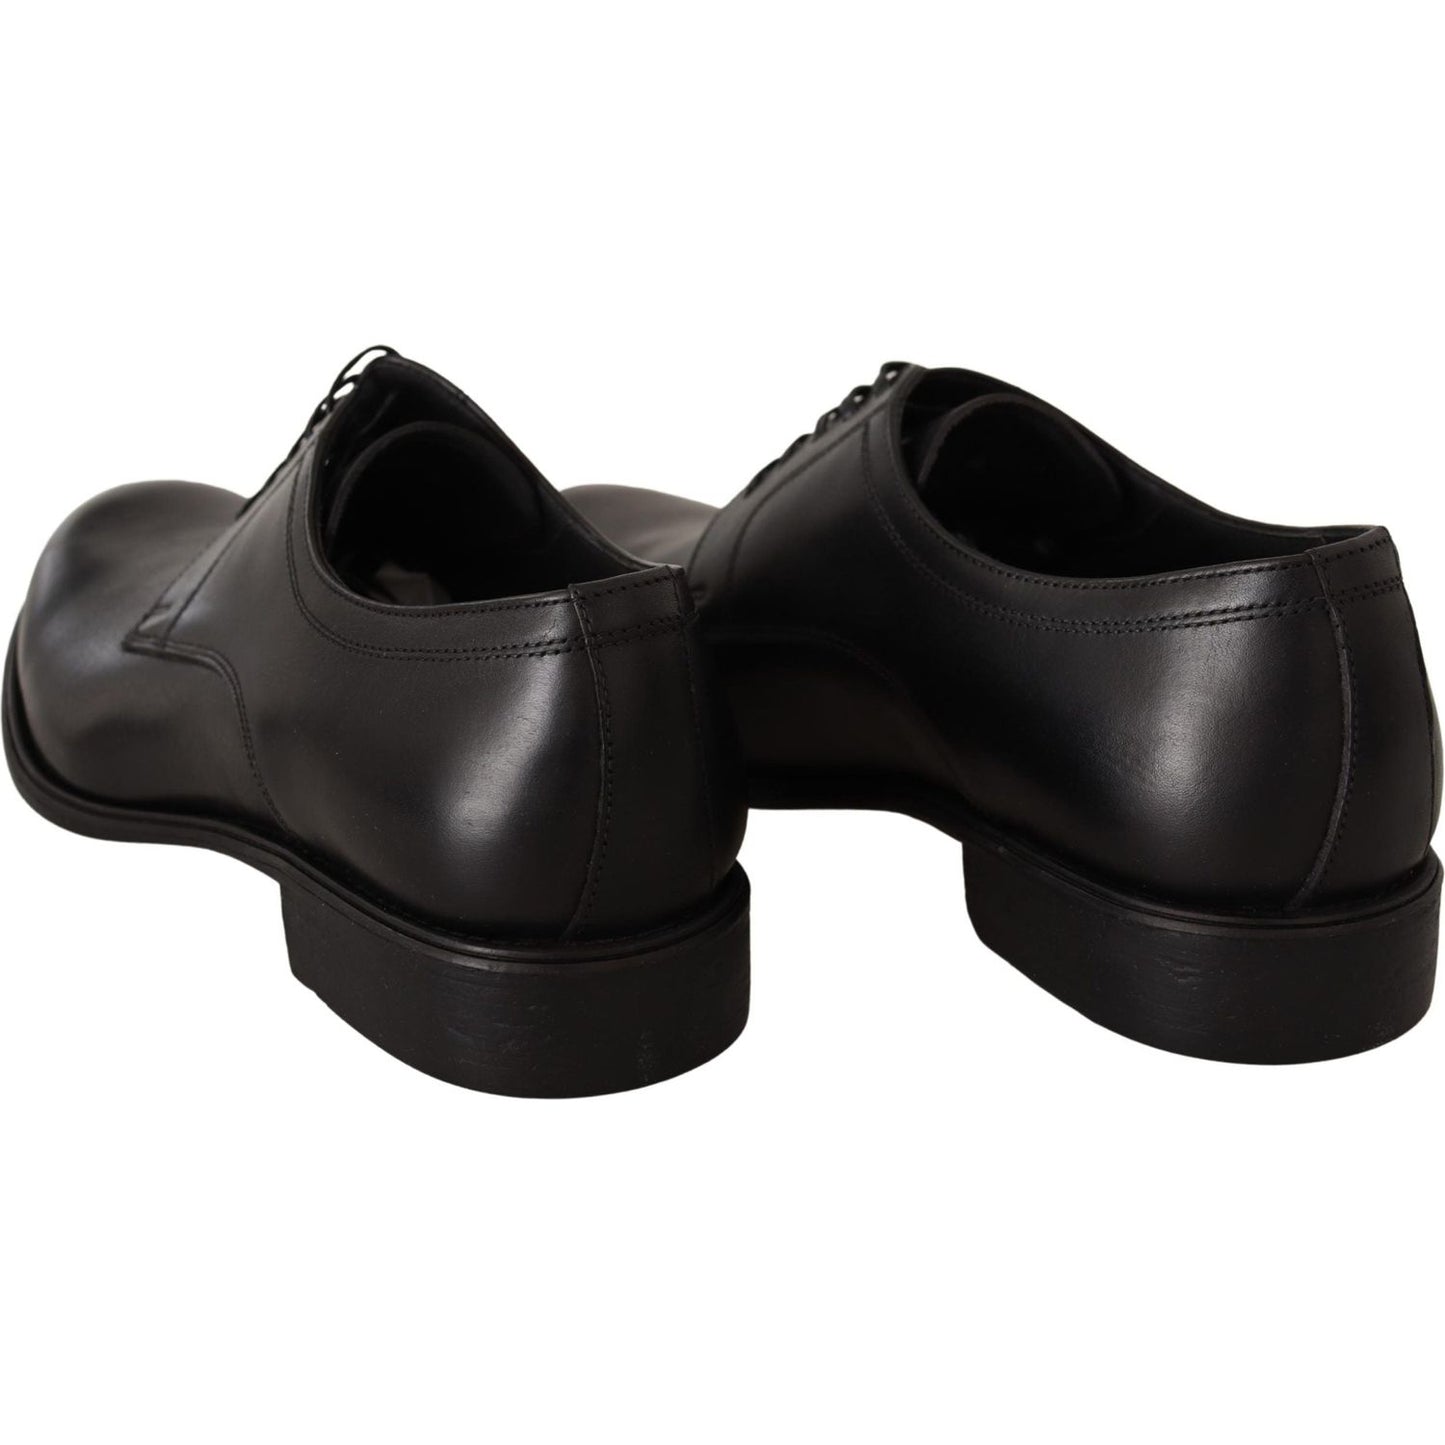 Dolce & Gabbana Elegant Black Derby Formal Shoes Dress Shoes black-leather-lace-up-mens-formal-derby-shoes-3